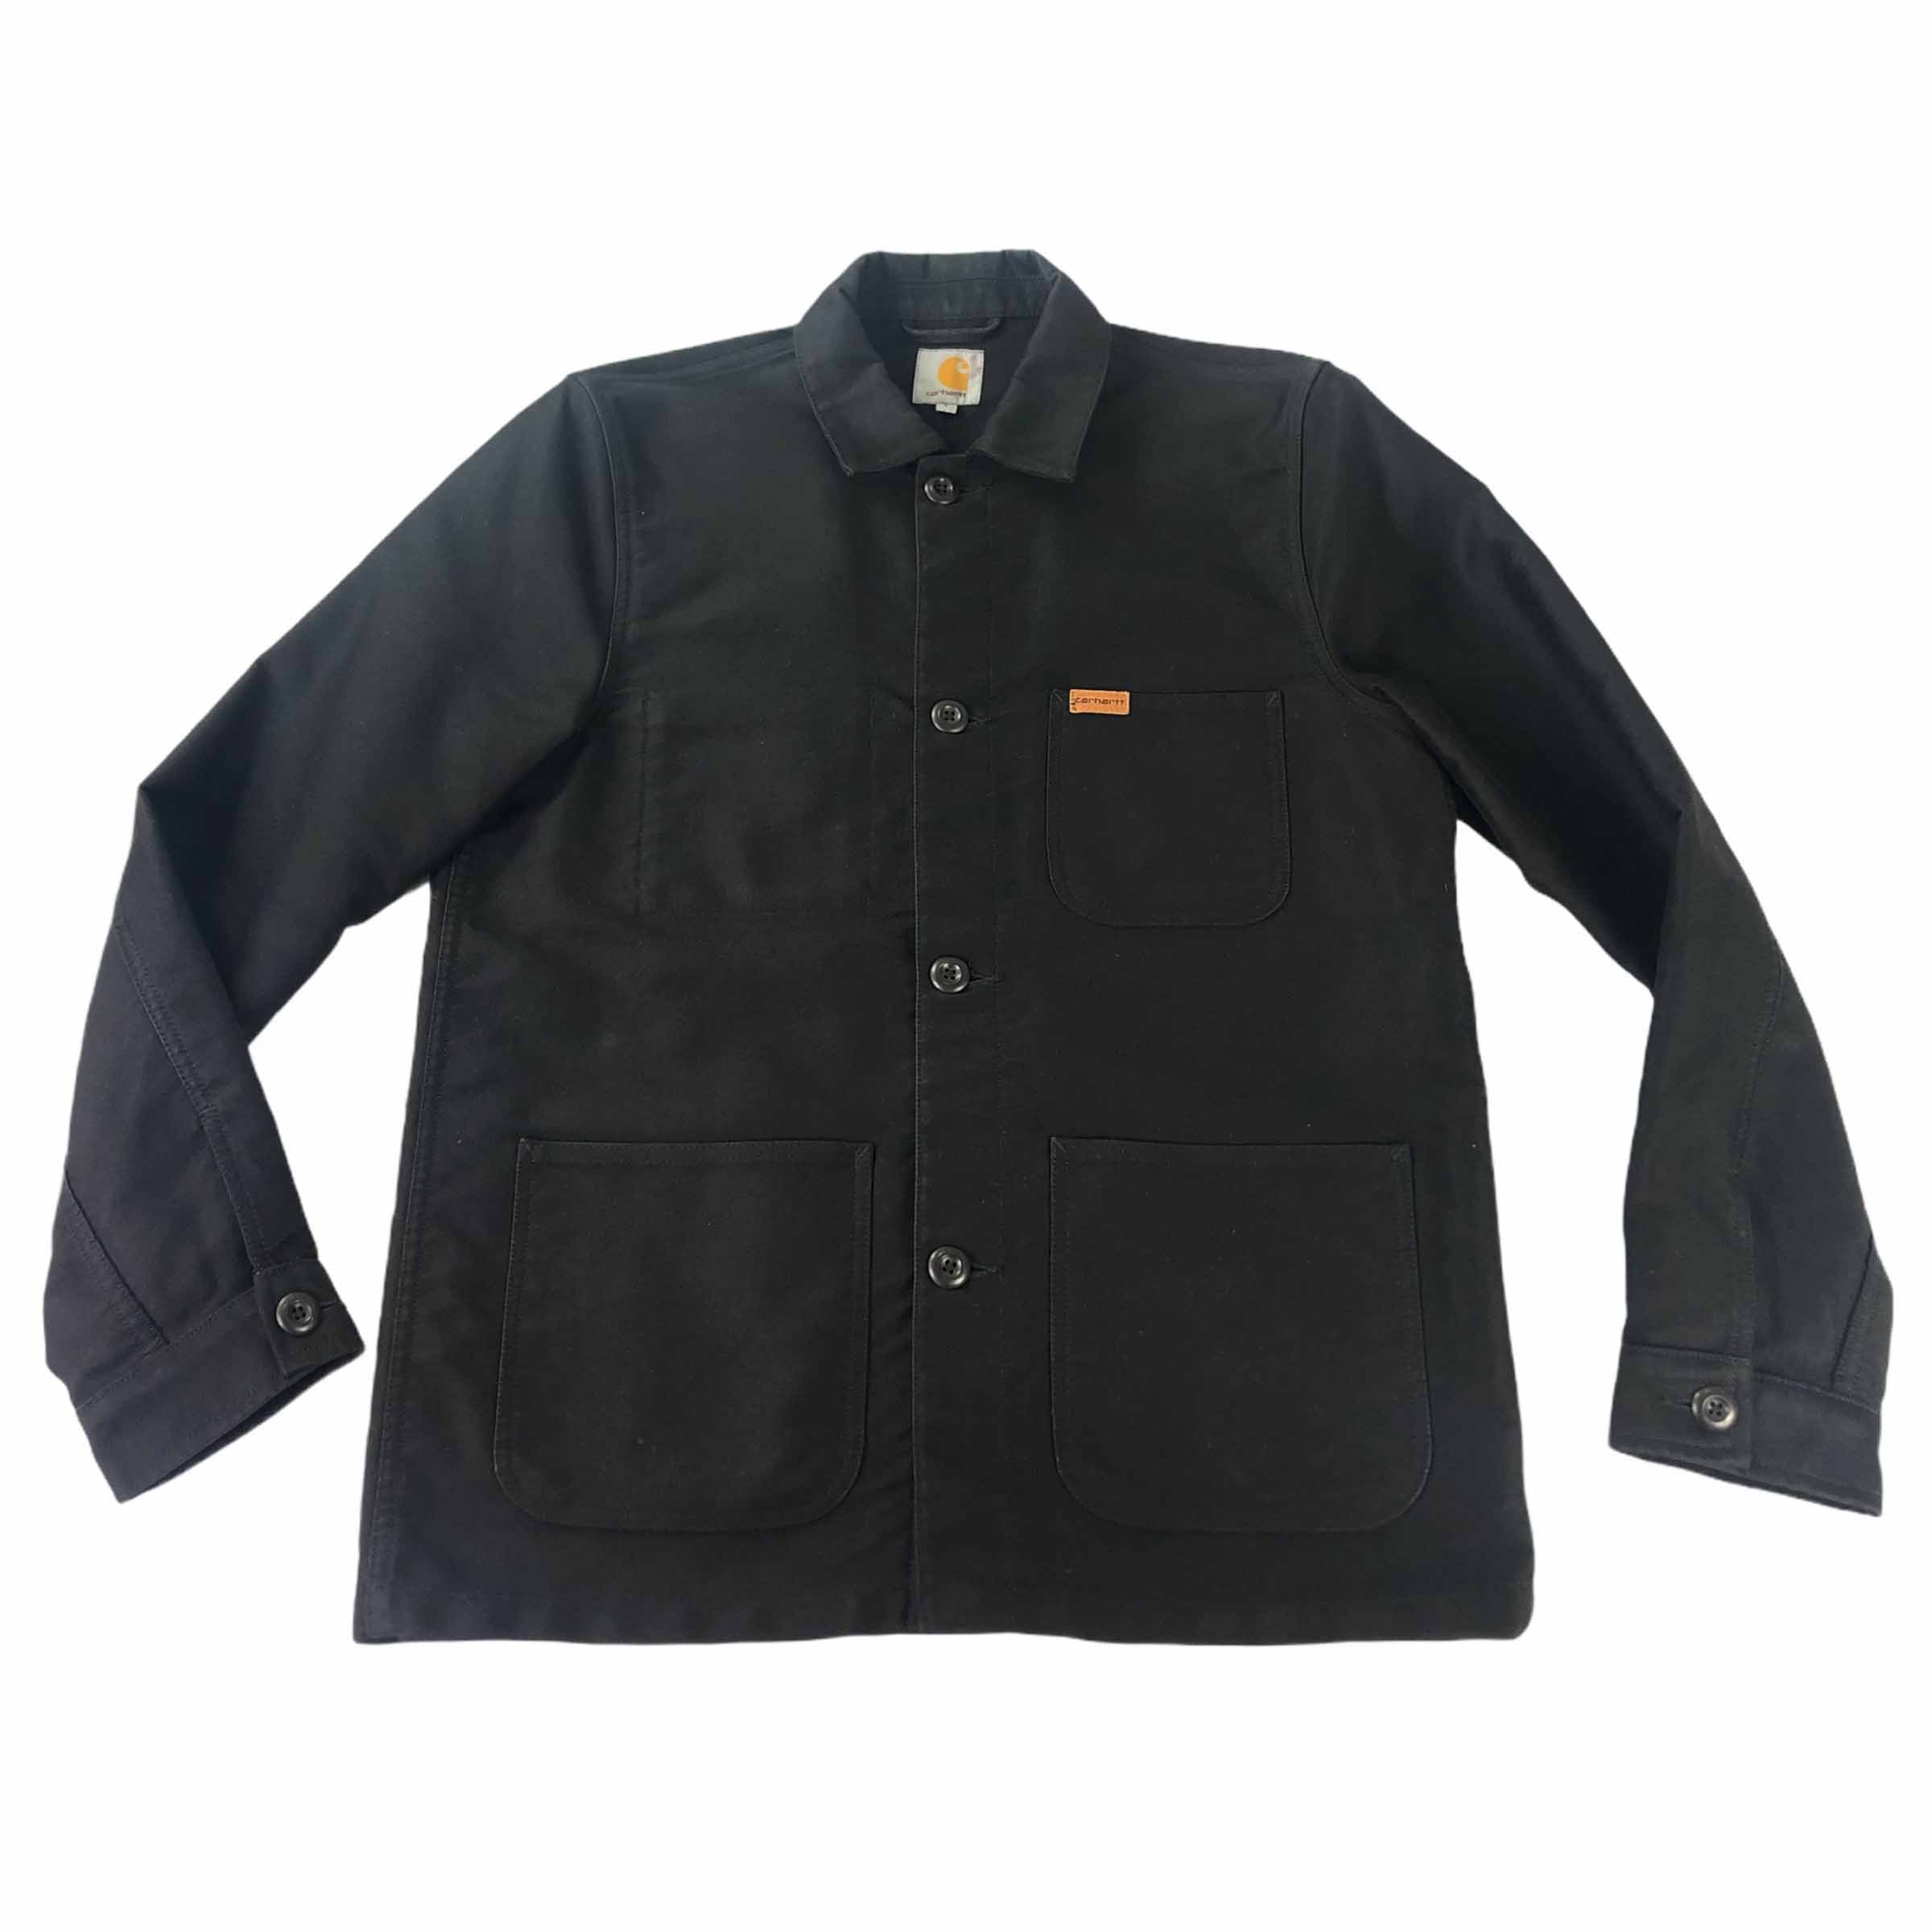 [Carhartt] Wip Jacket - Size L